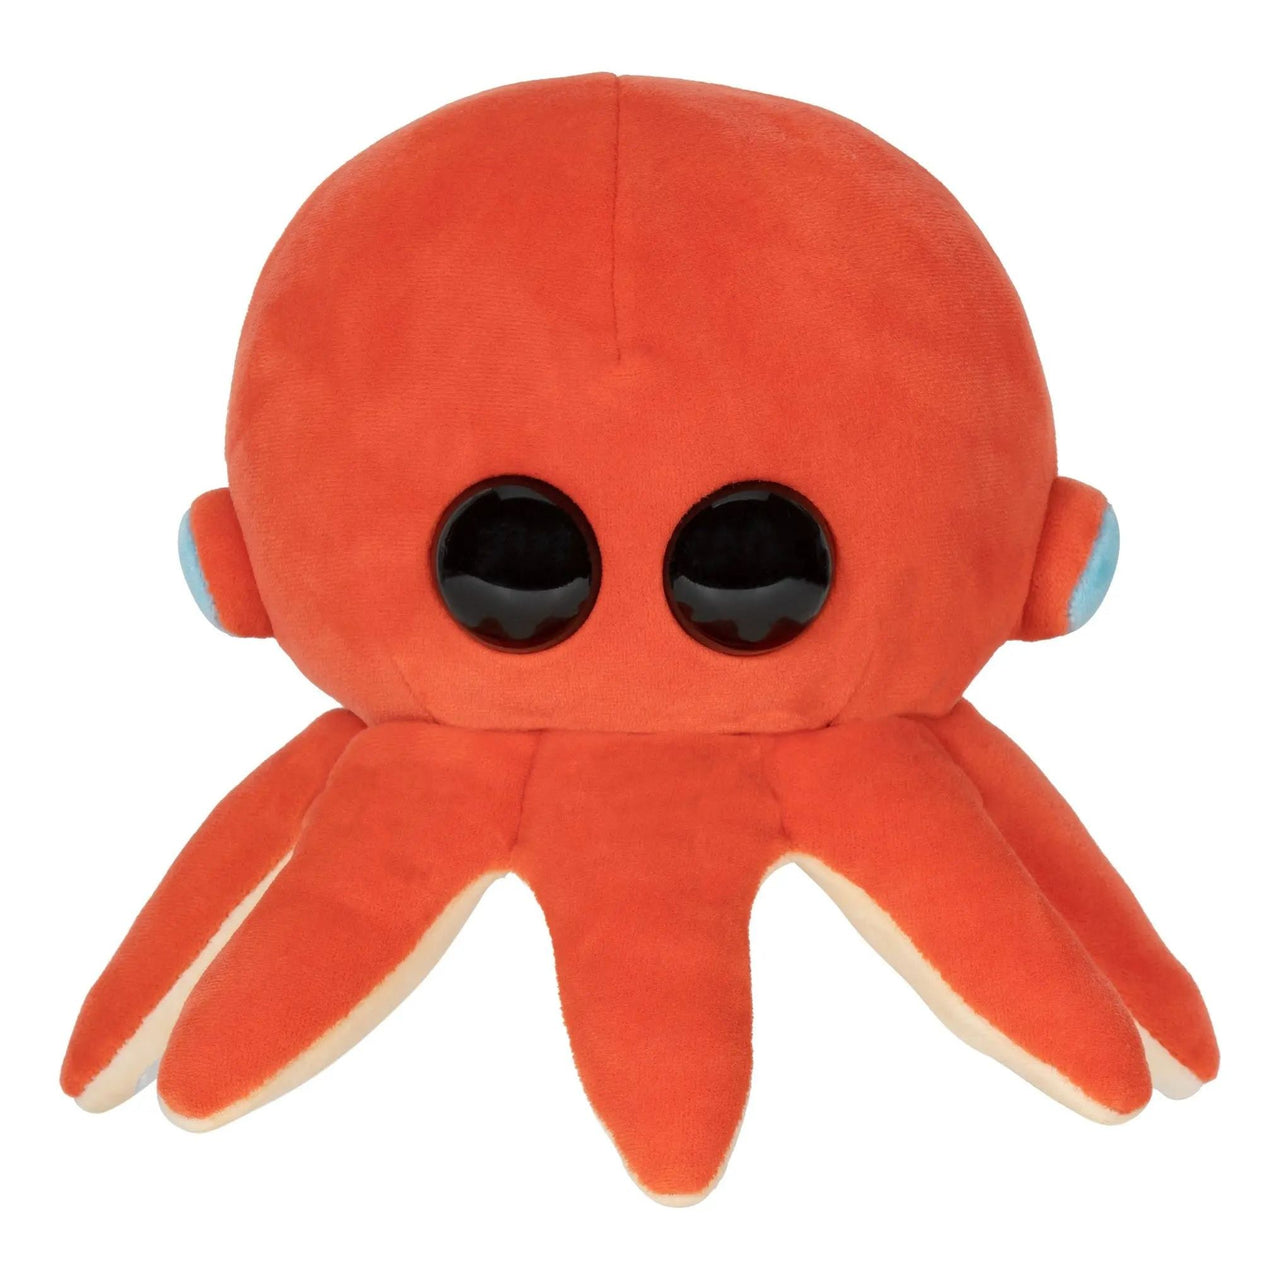 Adopt Me 8" Octopus Collector Plush Adopt Me